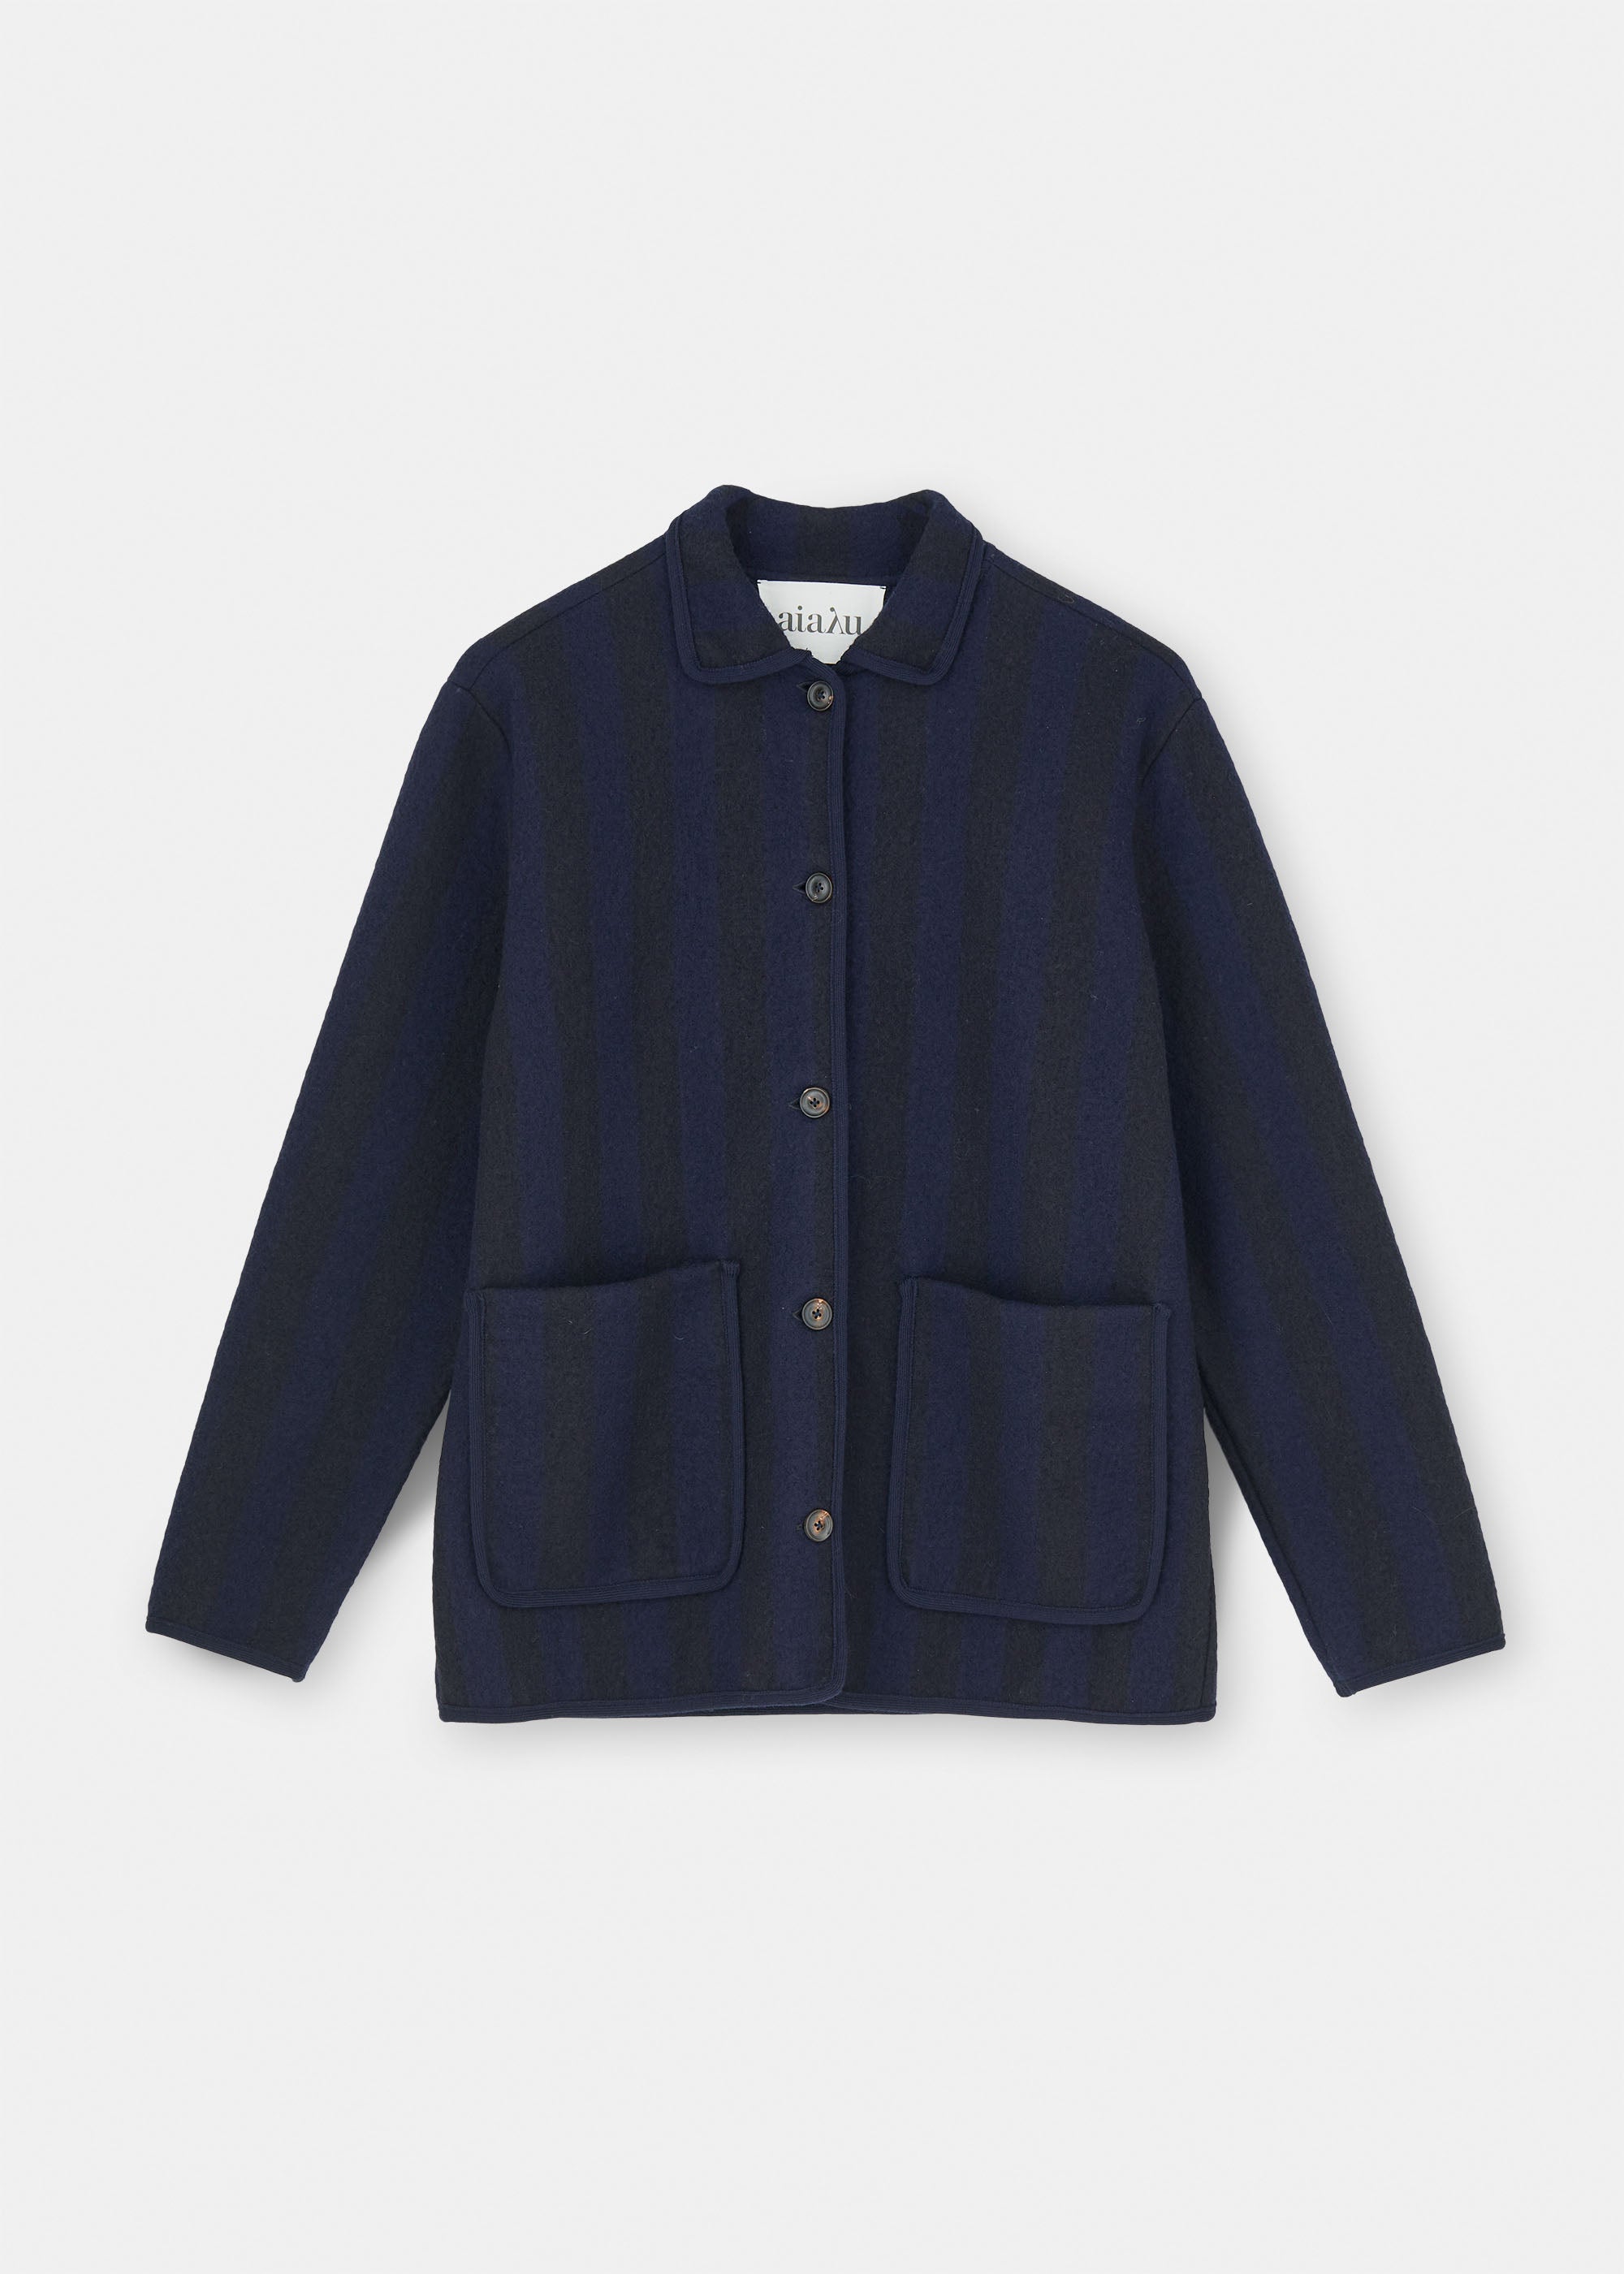 Ethan wool jacket | Mix Navy